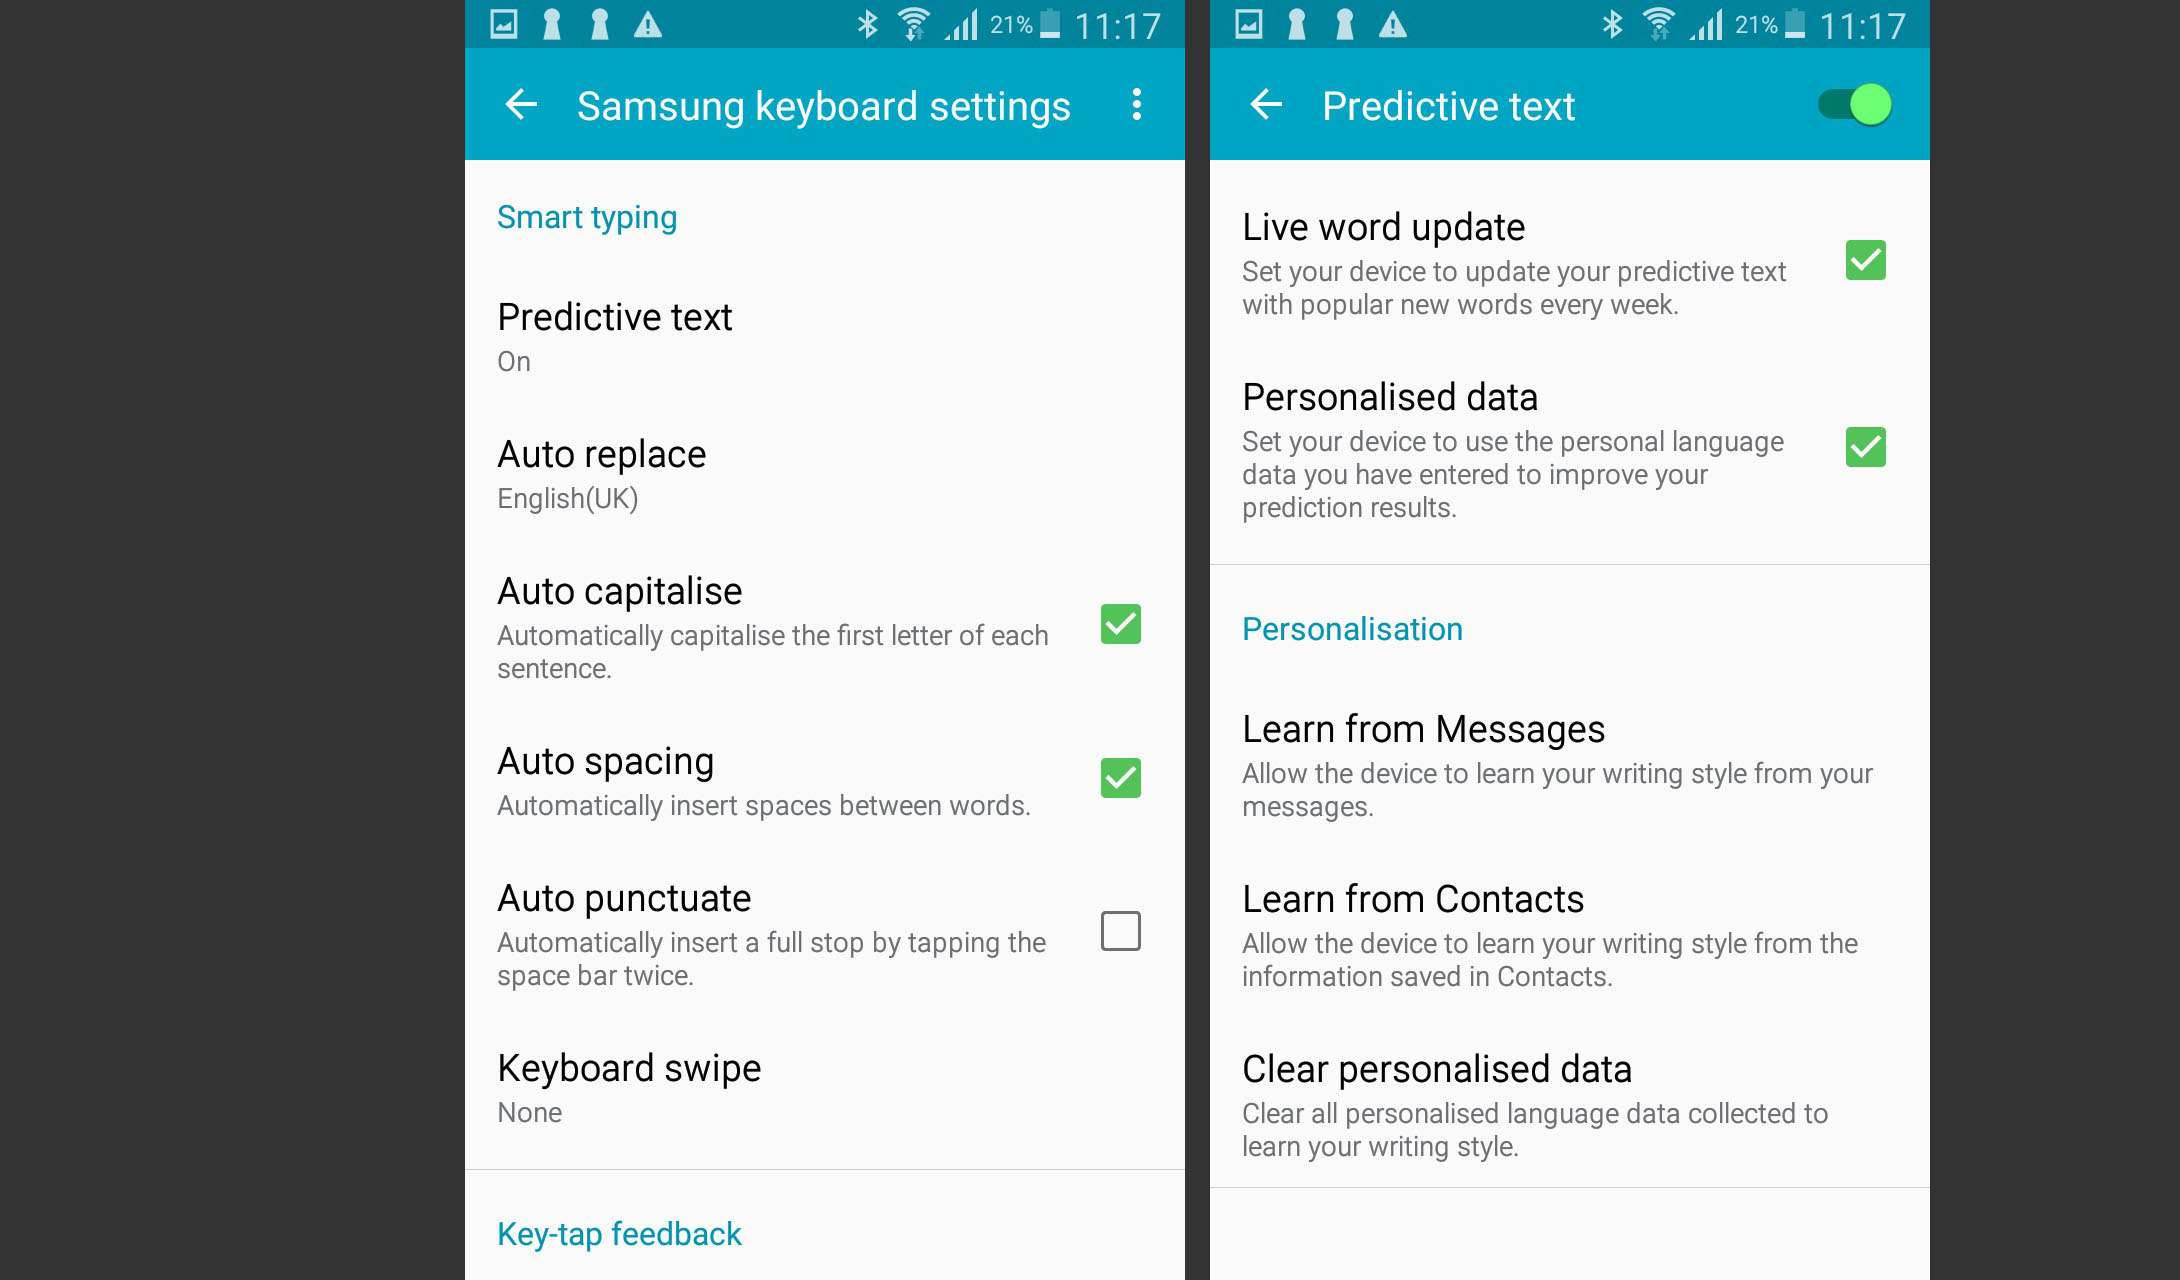 Samsung tangentbordsinställningar och förutsägbara textinställningar